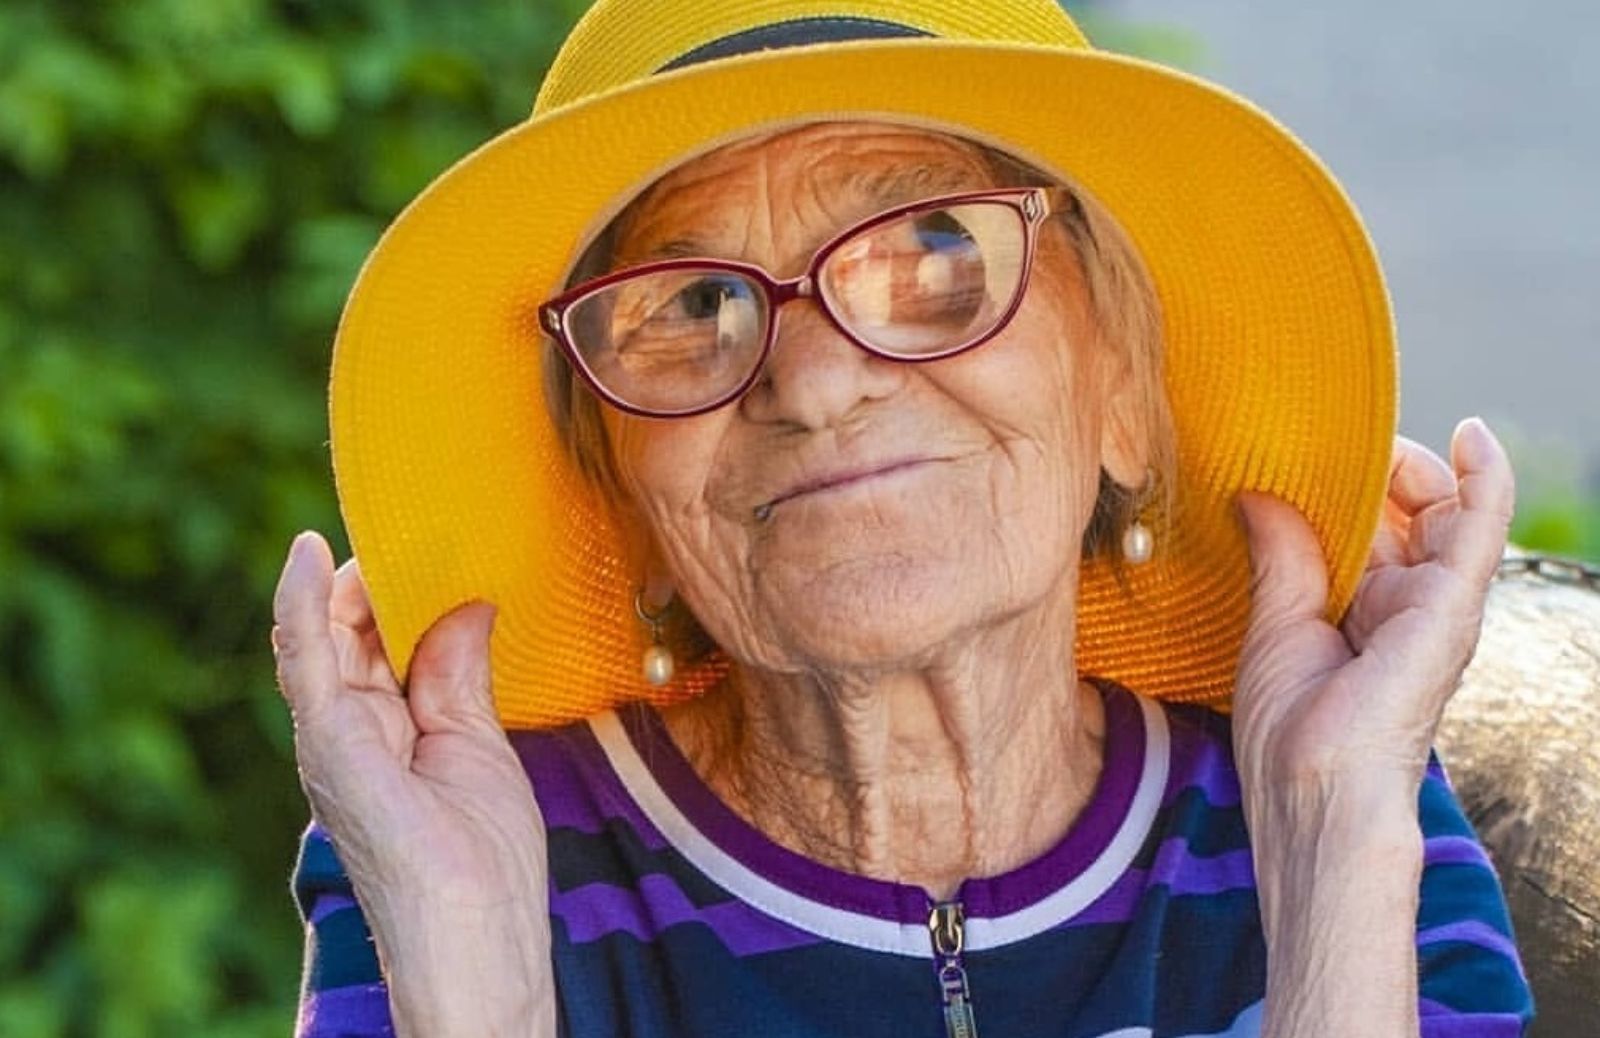 Nonna Lena giramondo. Ha 90 anni e viaggia da sola con il suo zainetto